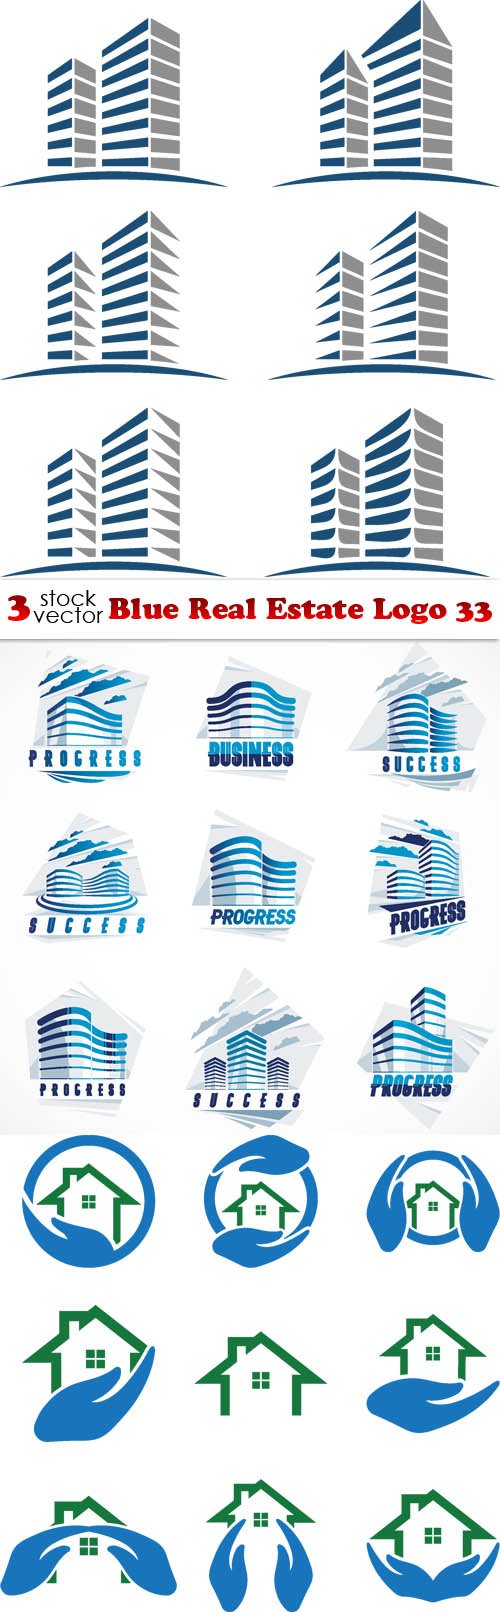 Vectors - Blue Real Estate Logo 33